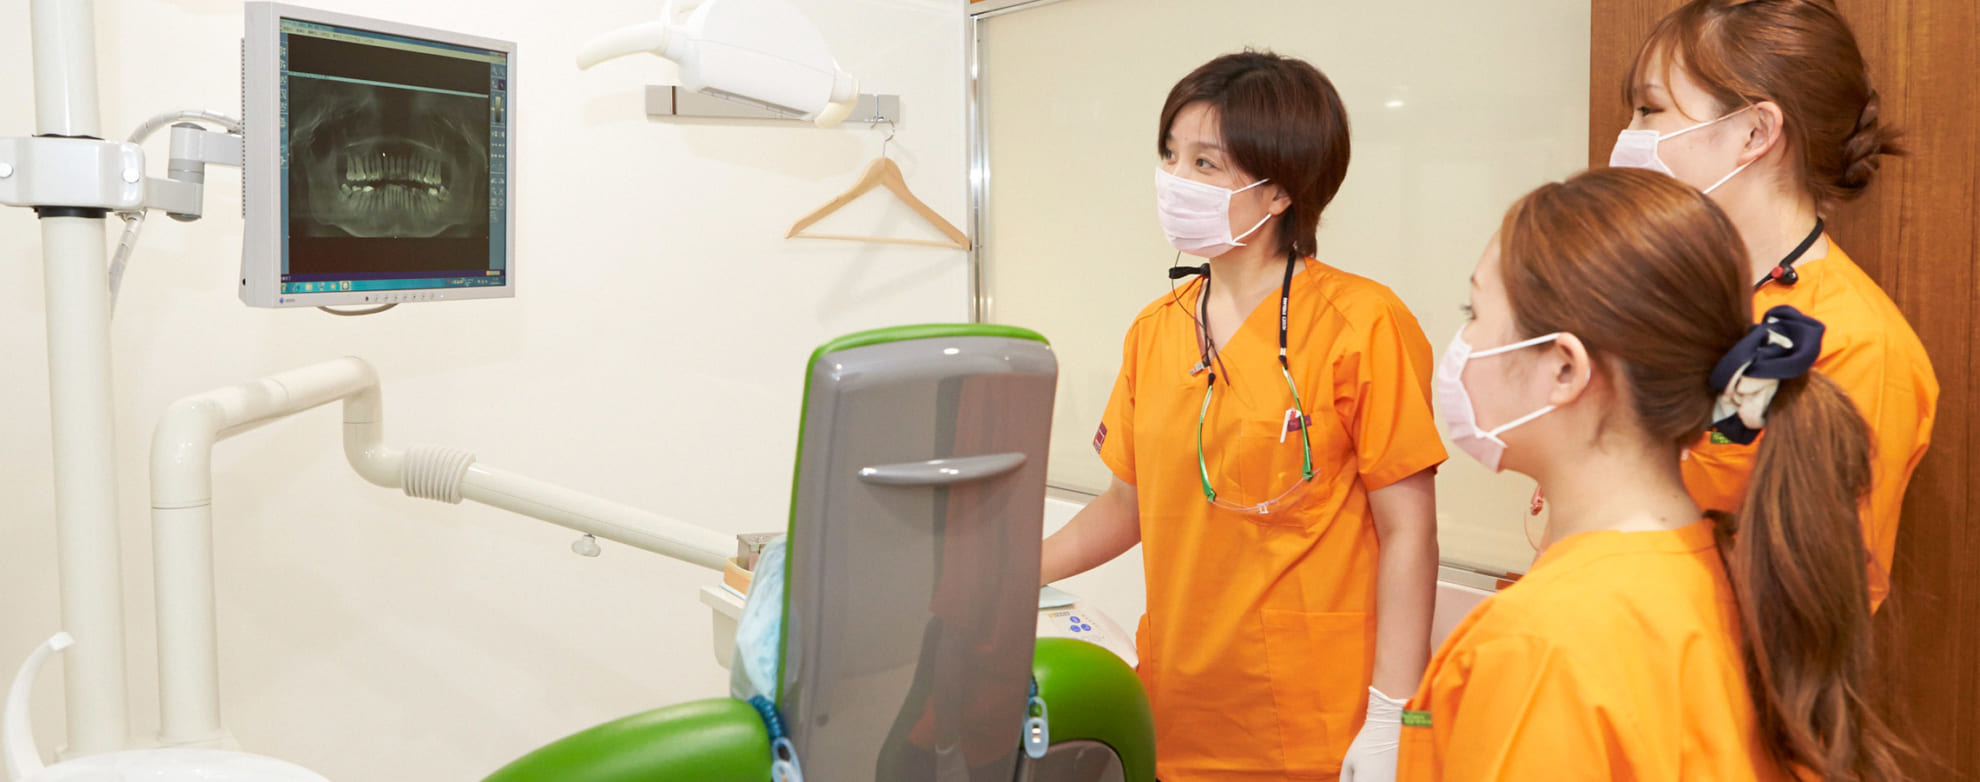 八重洲歯科診療所 のユニフォーム採用事例 医療白衣・事務服ユニフォームのフォーク